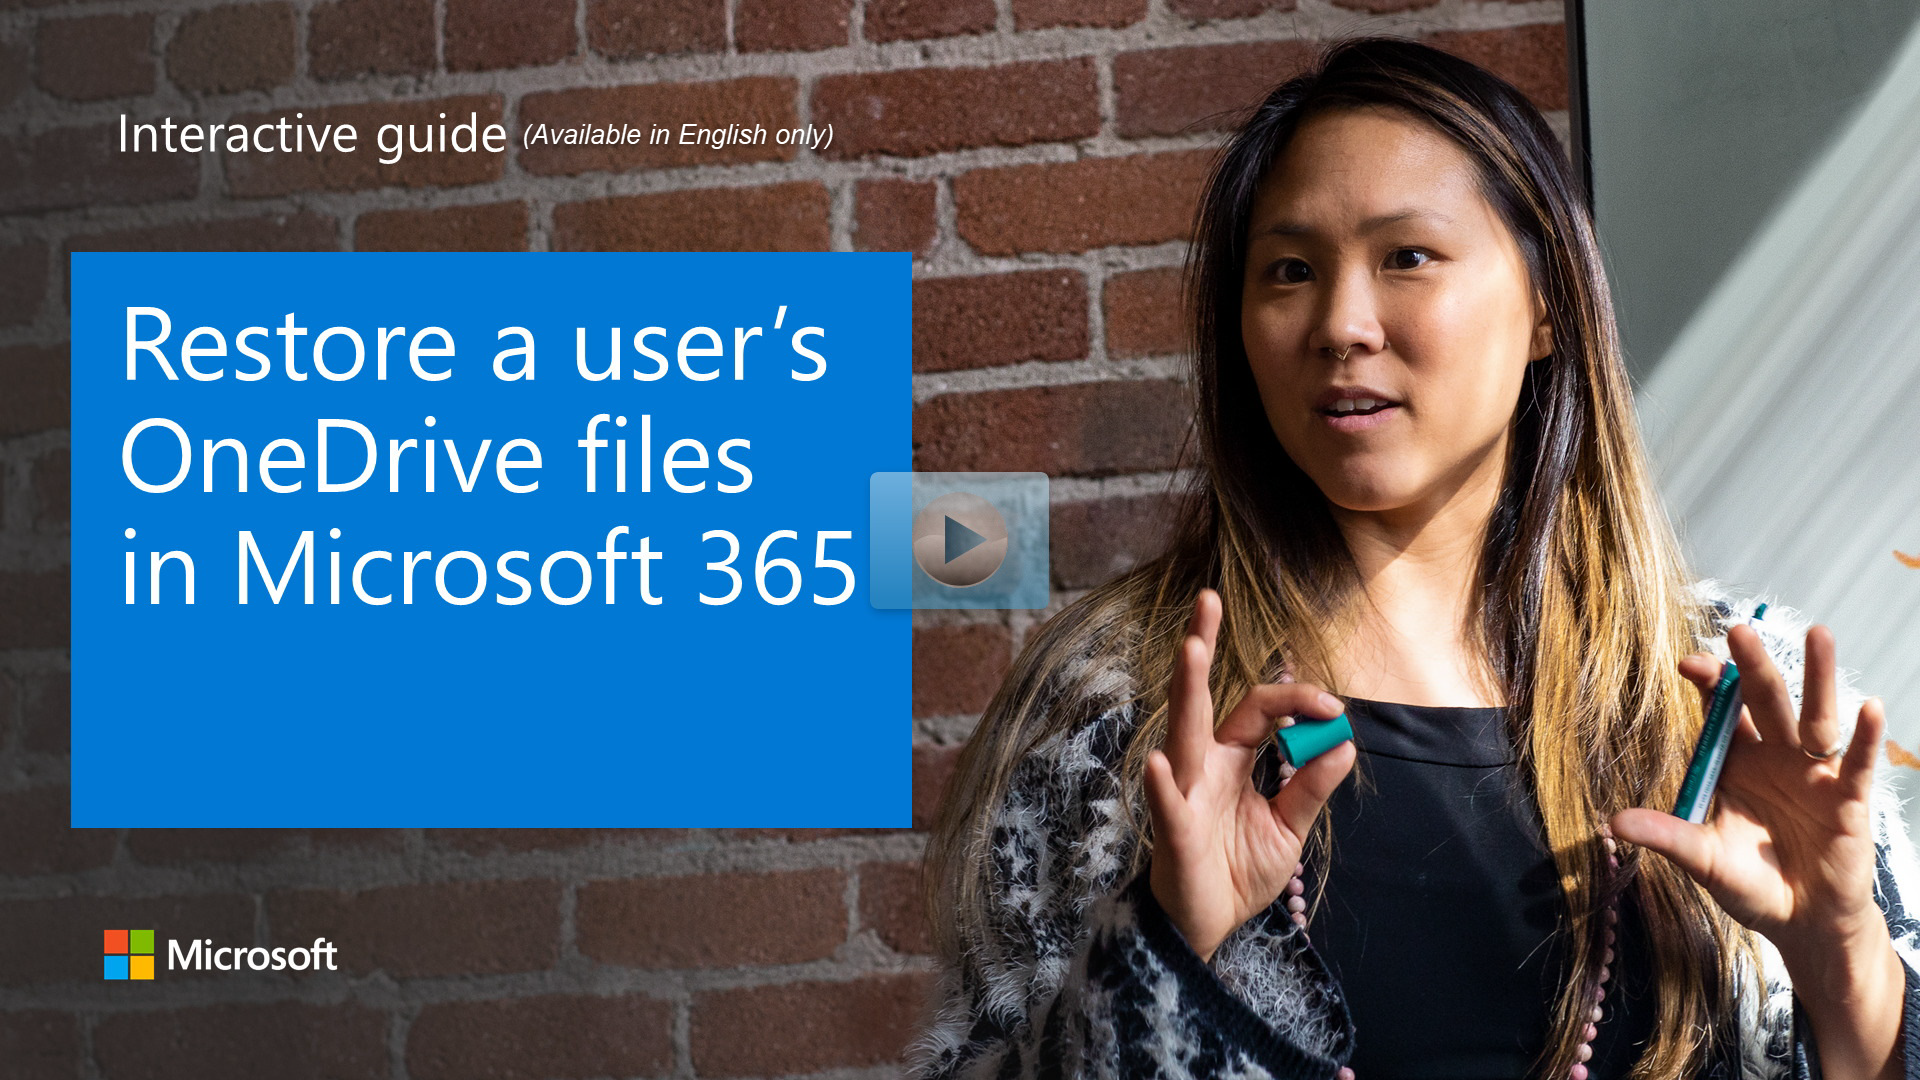 Restaurar arquivos do OneDrive de um usuário no Microsoft 365